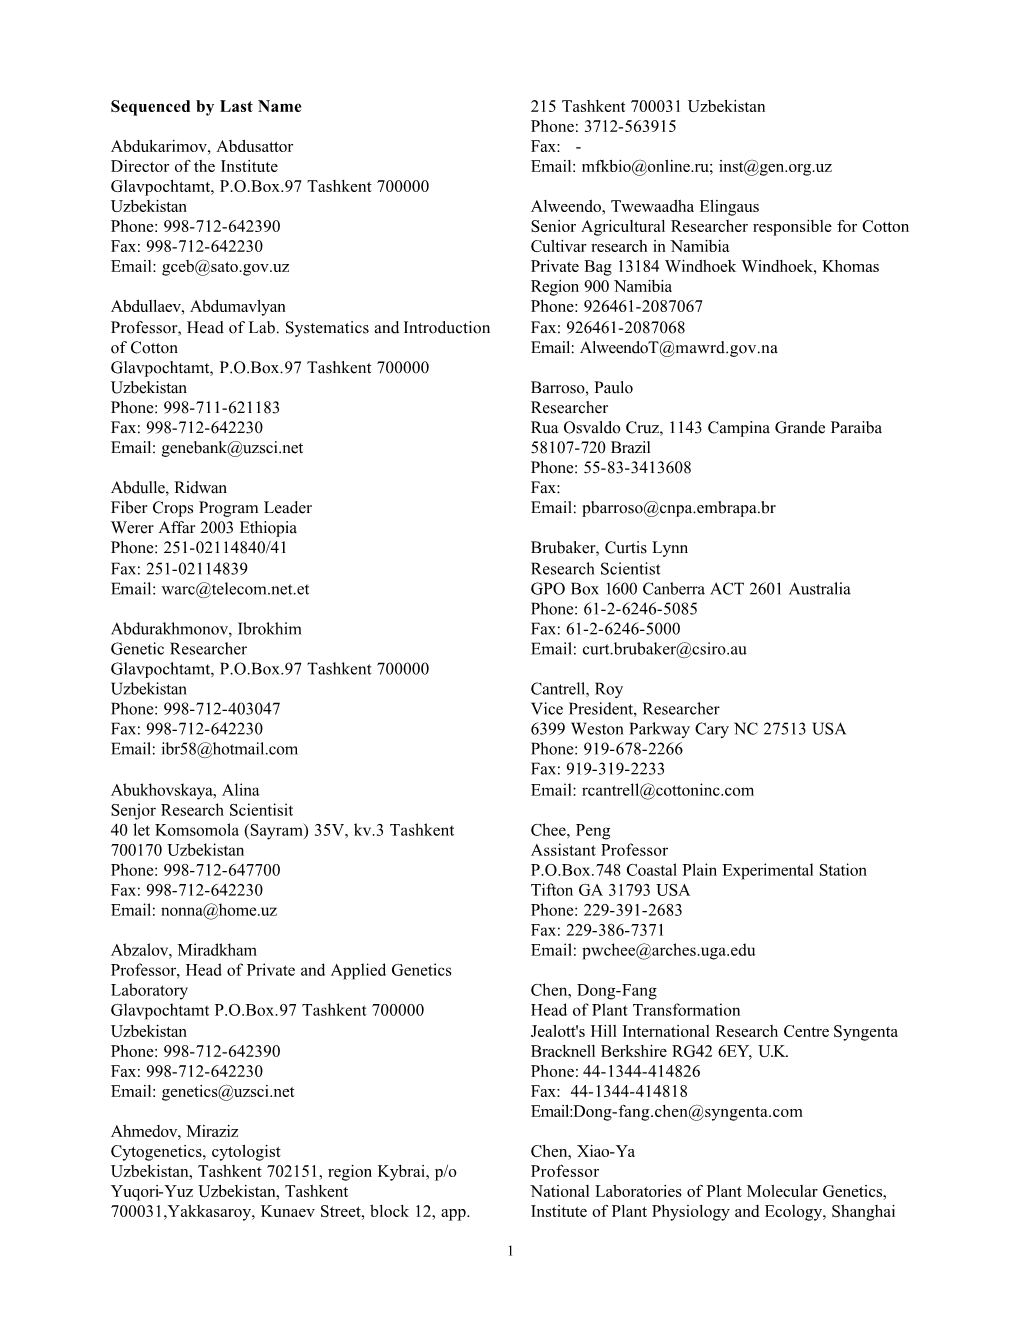 List of Workshop Participants